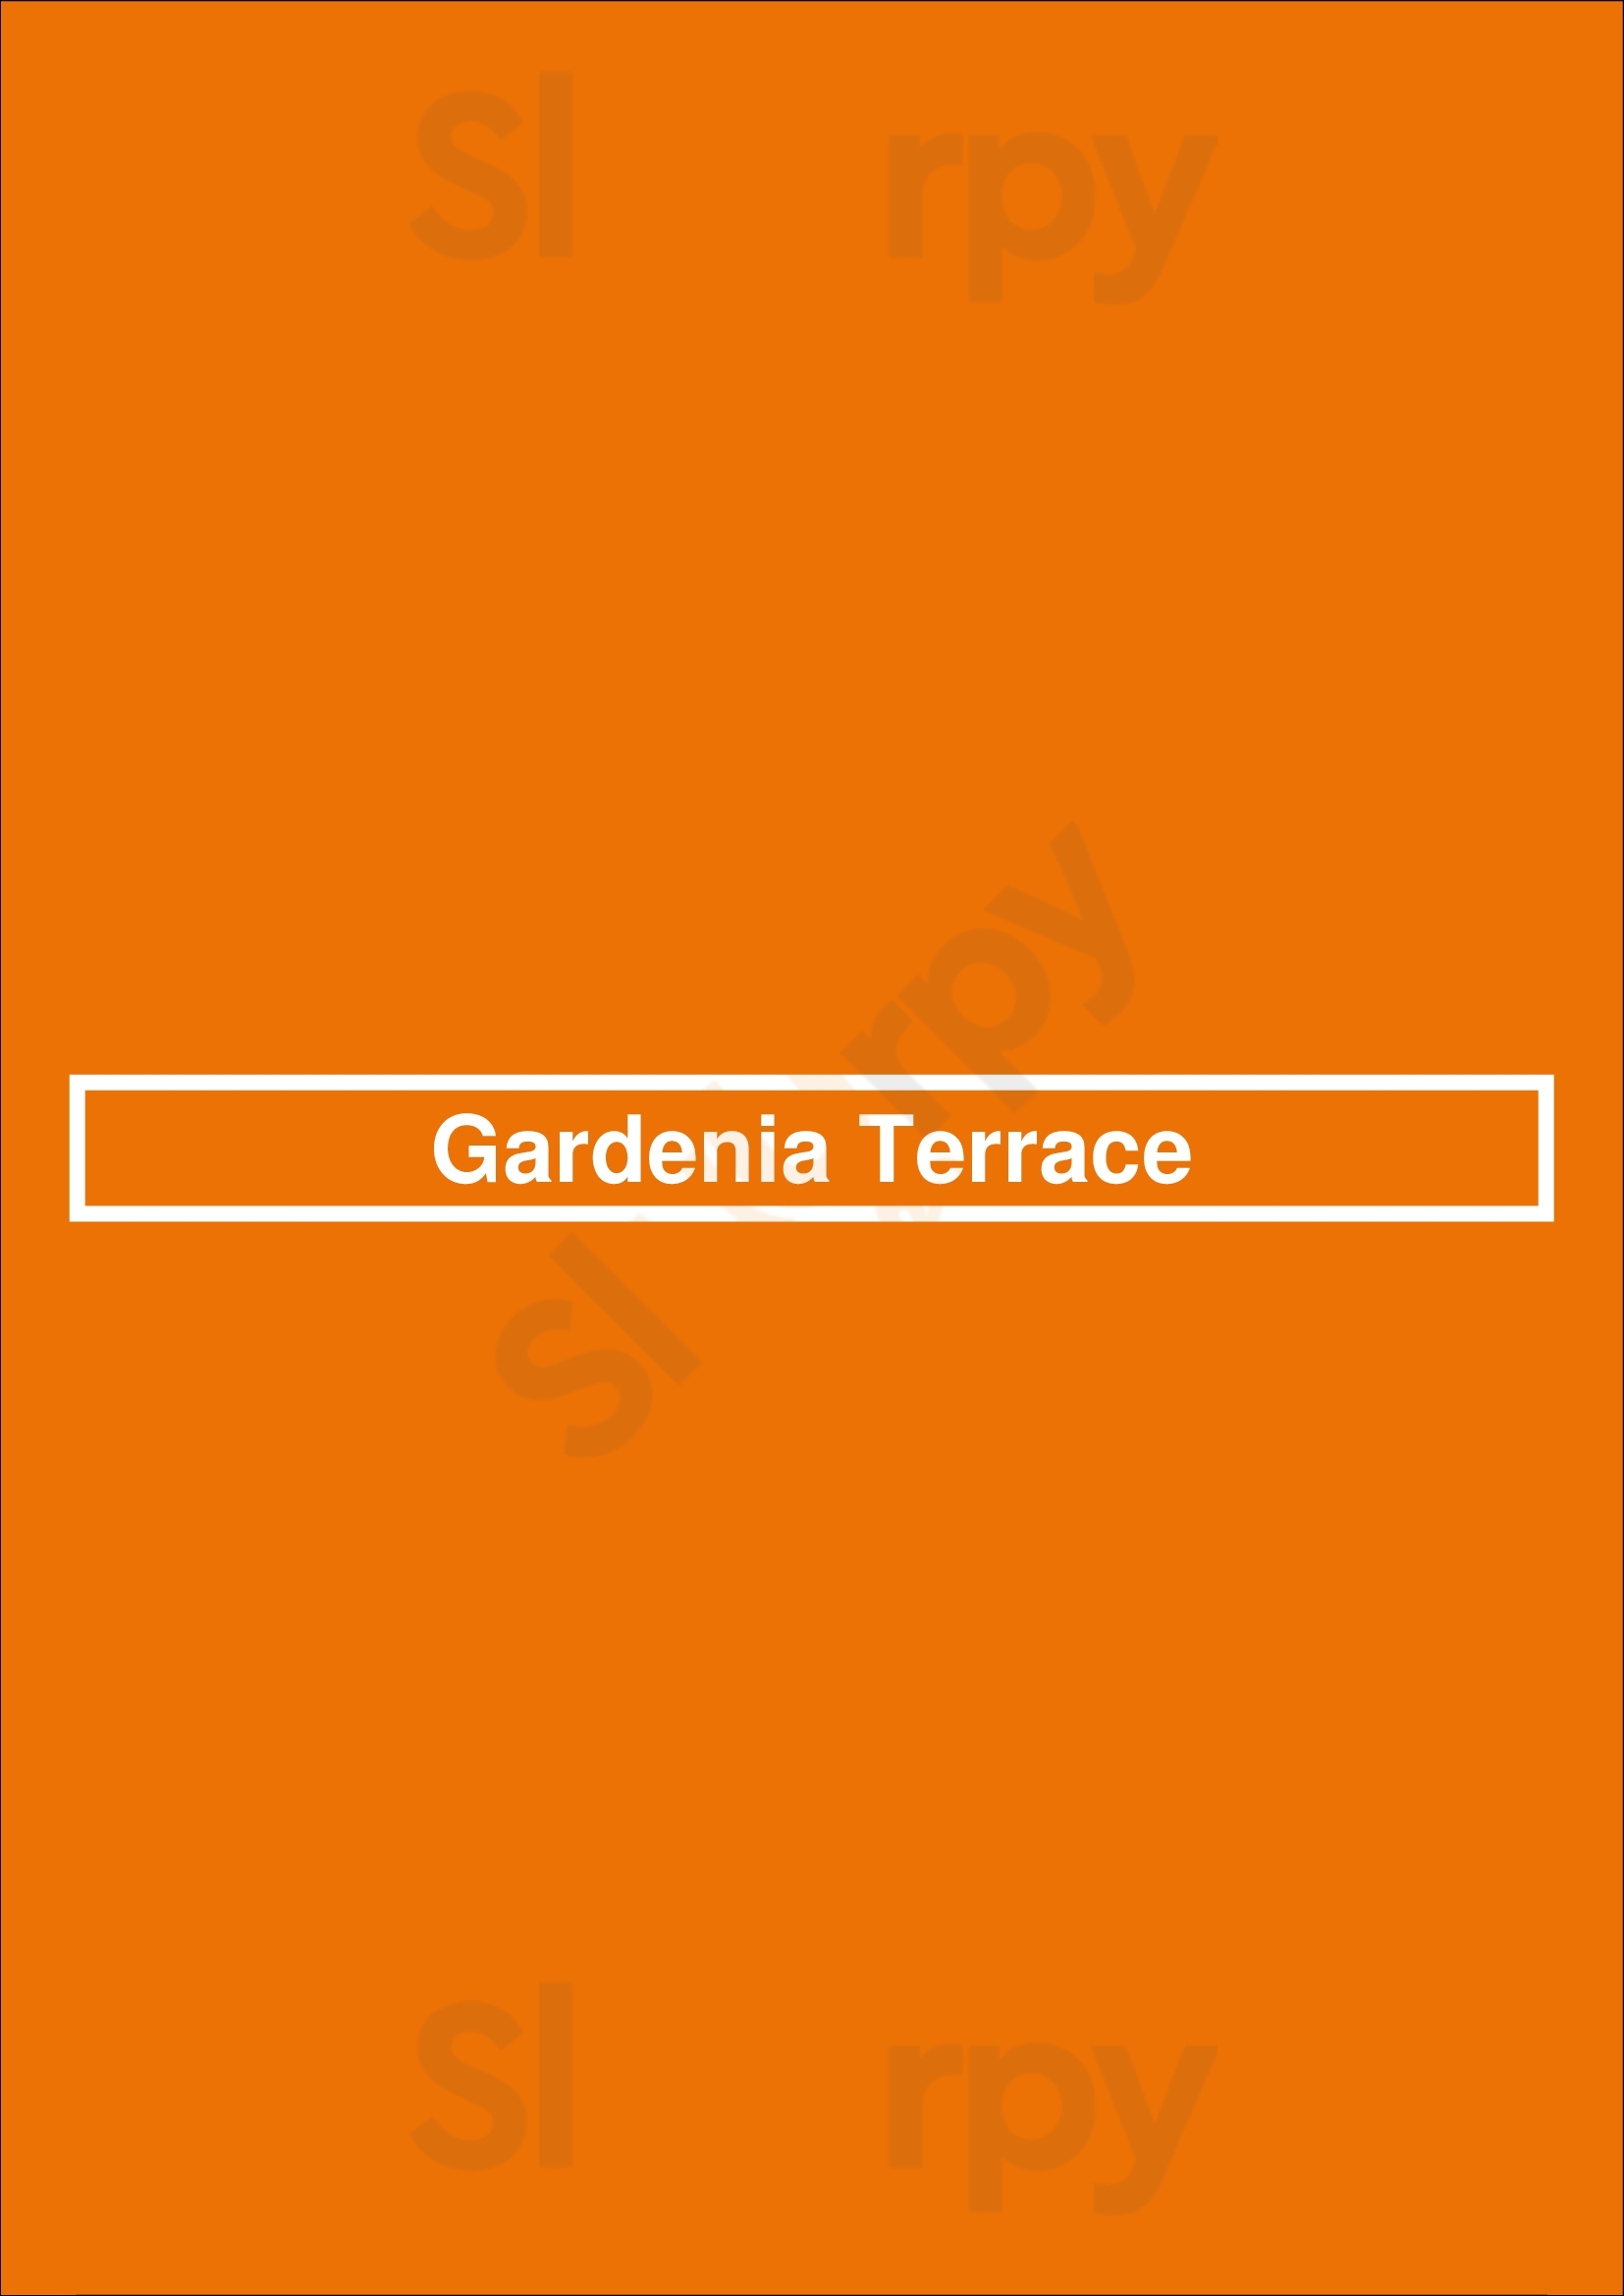 Gardenia Terrace New York City Menu - 1